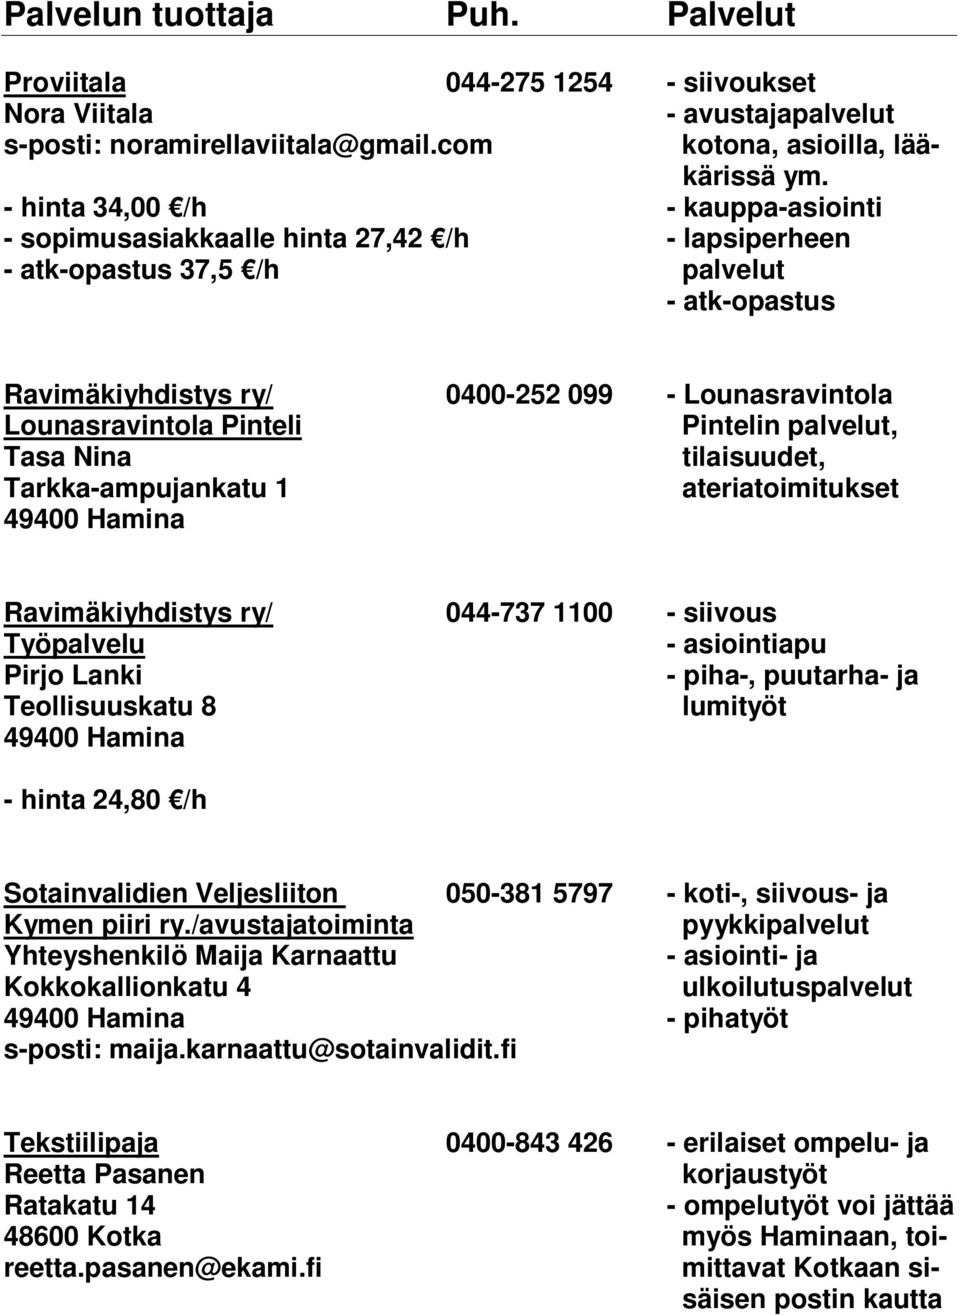 Pinteli Pintelin palvelut, Tasa Nina tilaisuudet, Tarkka-ampujankatu 1 ateriatoimitukset Ravimäkiyhdistys ry/ 044-737 1100 - siivous Työpalvelu Pirjo Lanki - piha-, puutarha- ja Teollisuuskatu 8